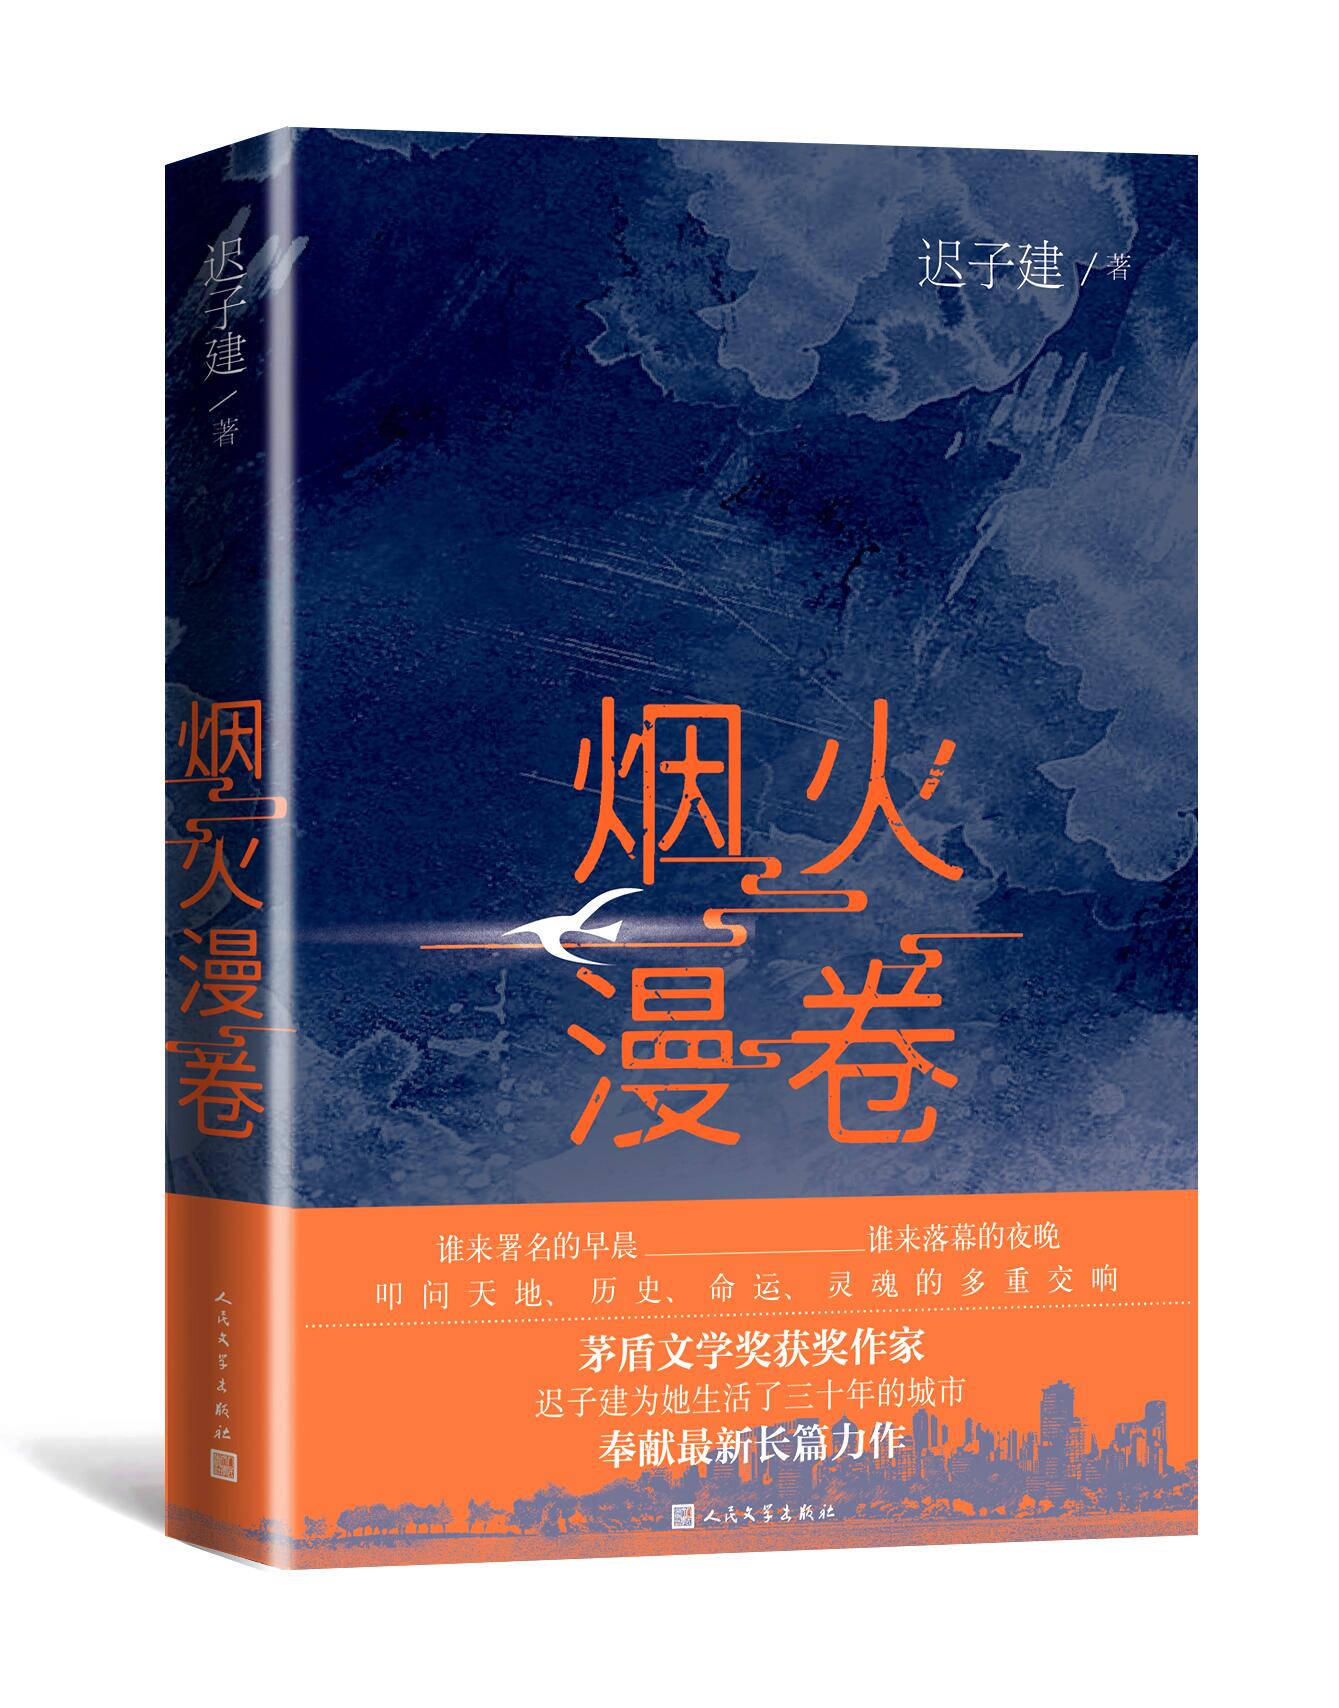 【2020中国好书】烟火漫卷 迟子建长篇力作  一部聚焦当下都市百姓生活的长篇小说 人民文学出版社 中国近当代小说